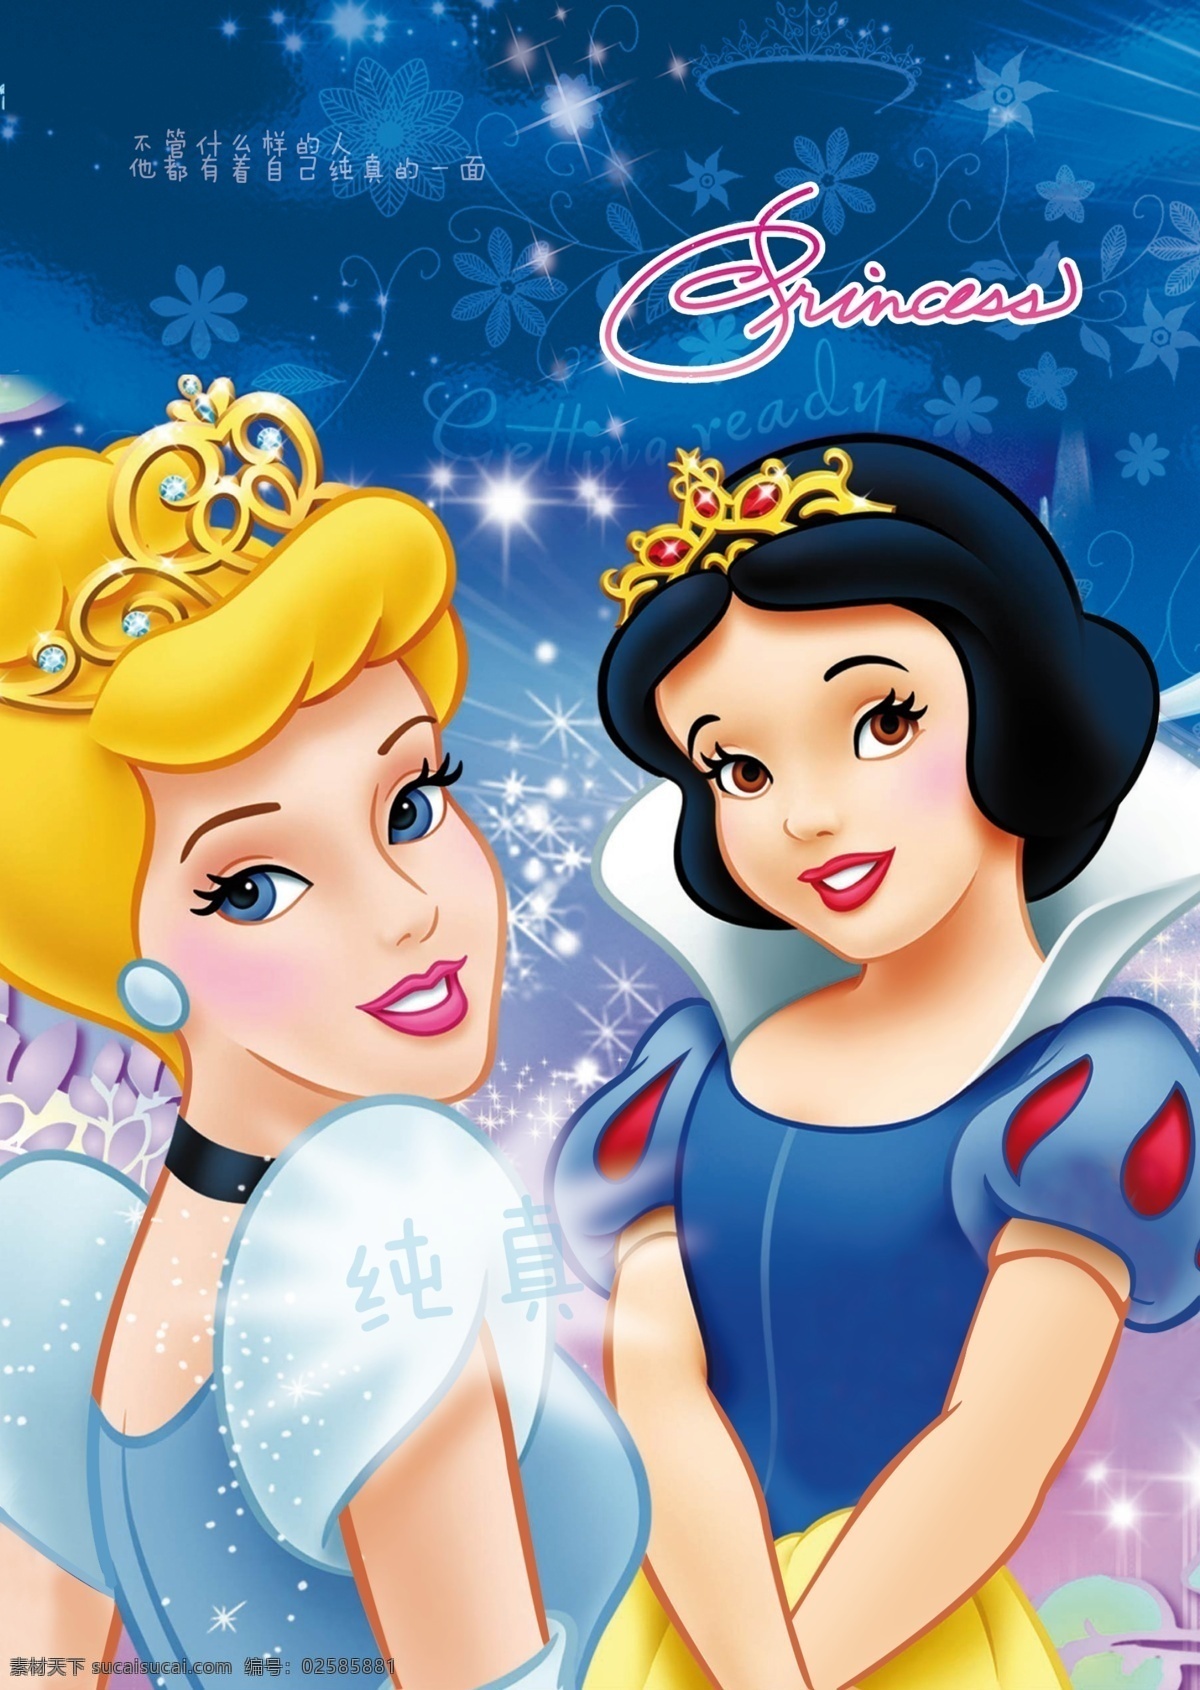 白雪公主 公主 可爱卡通 卡通 本本 封面 女孩子 分层 源文件